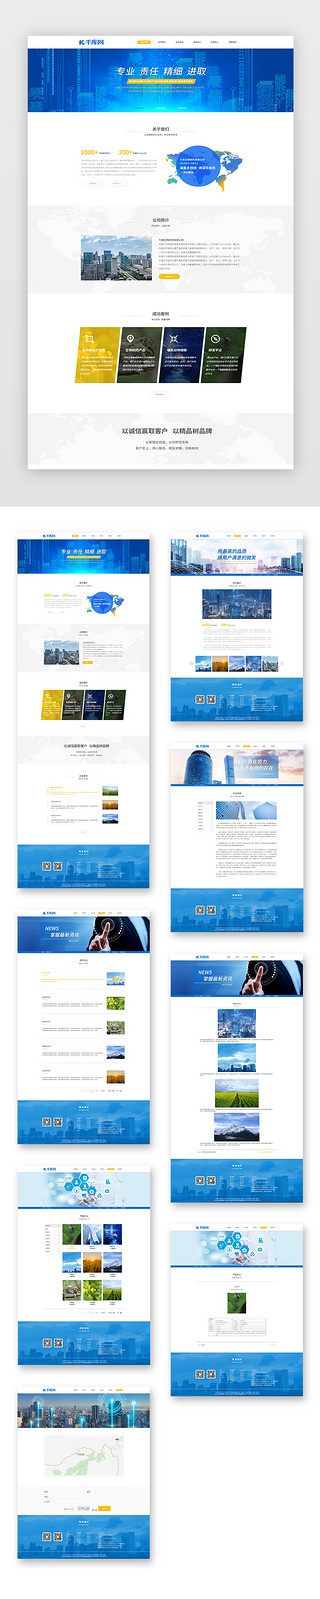 临床研究UI设计素材_蓝色通用简约生物药物研究企业网站套图